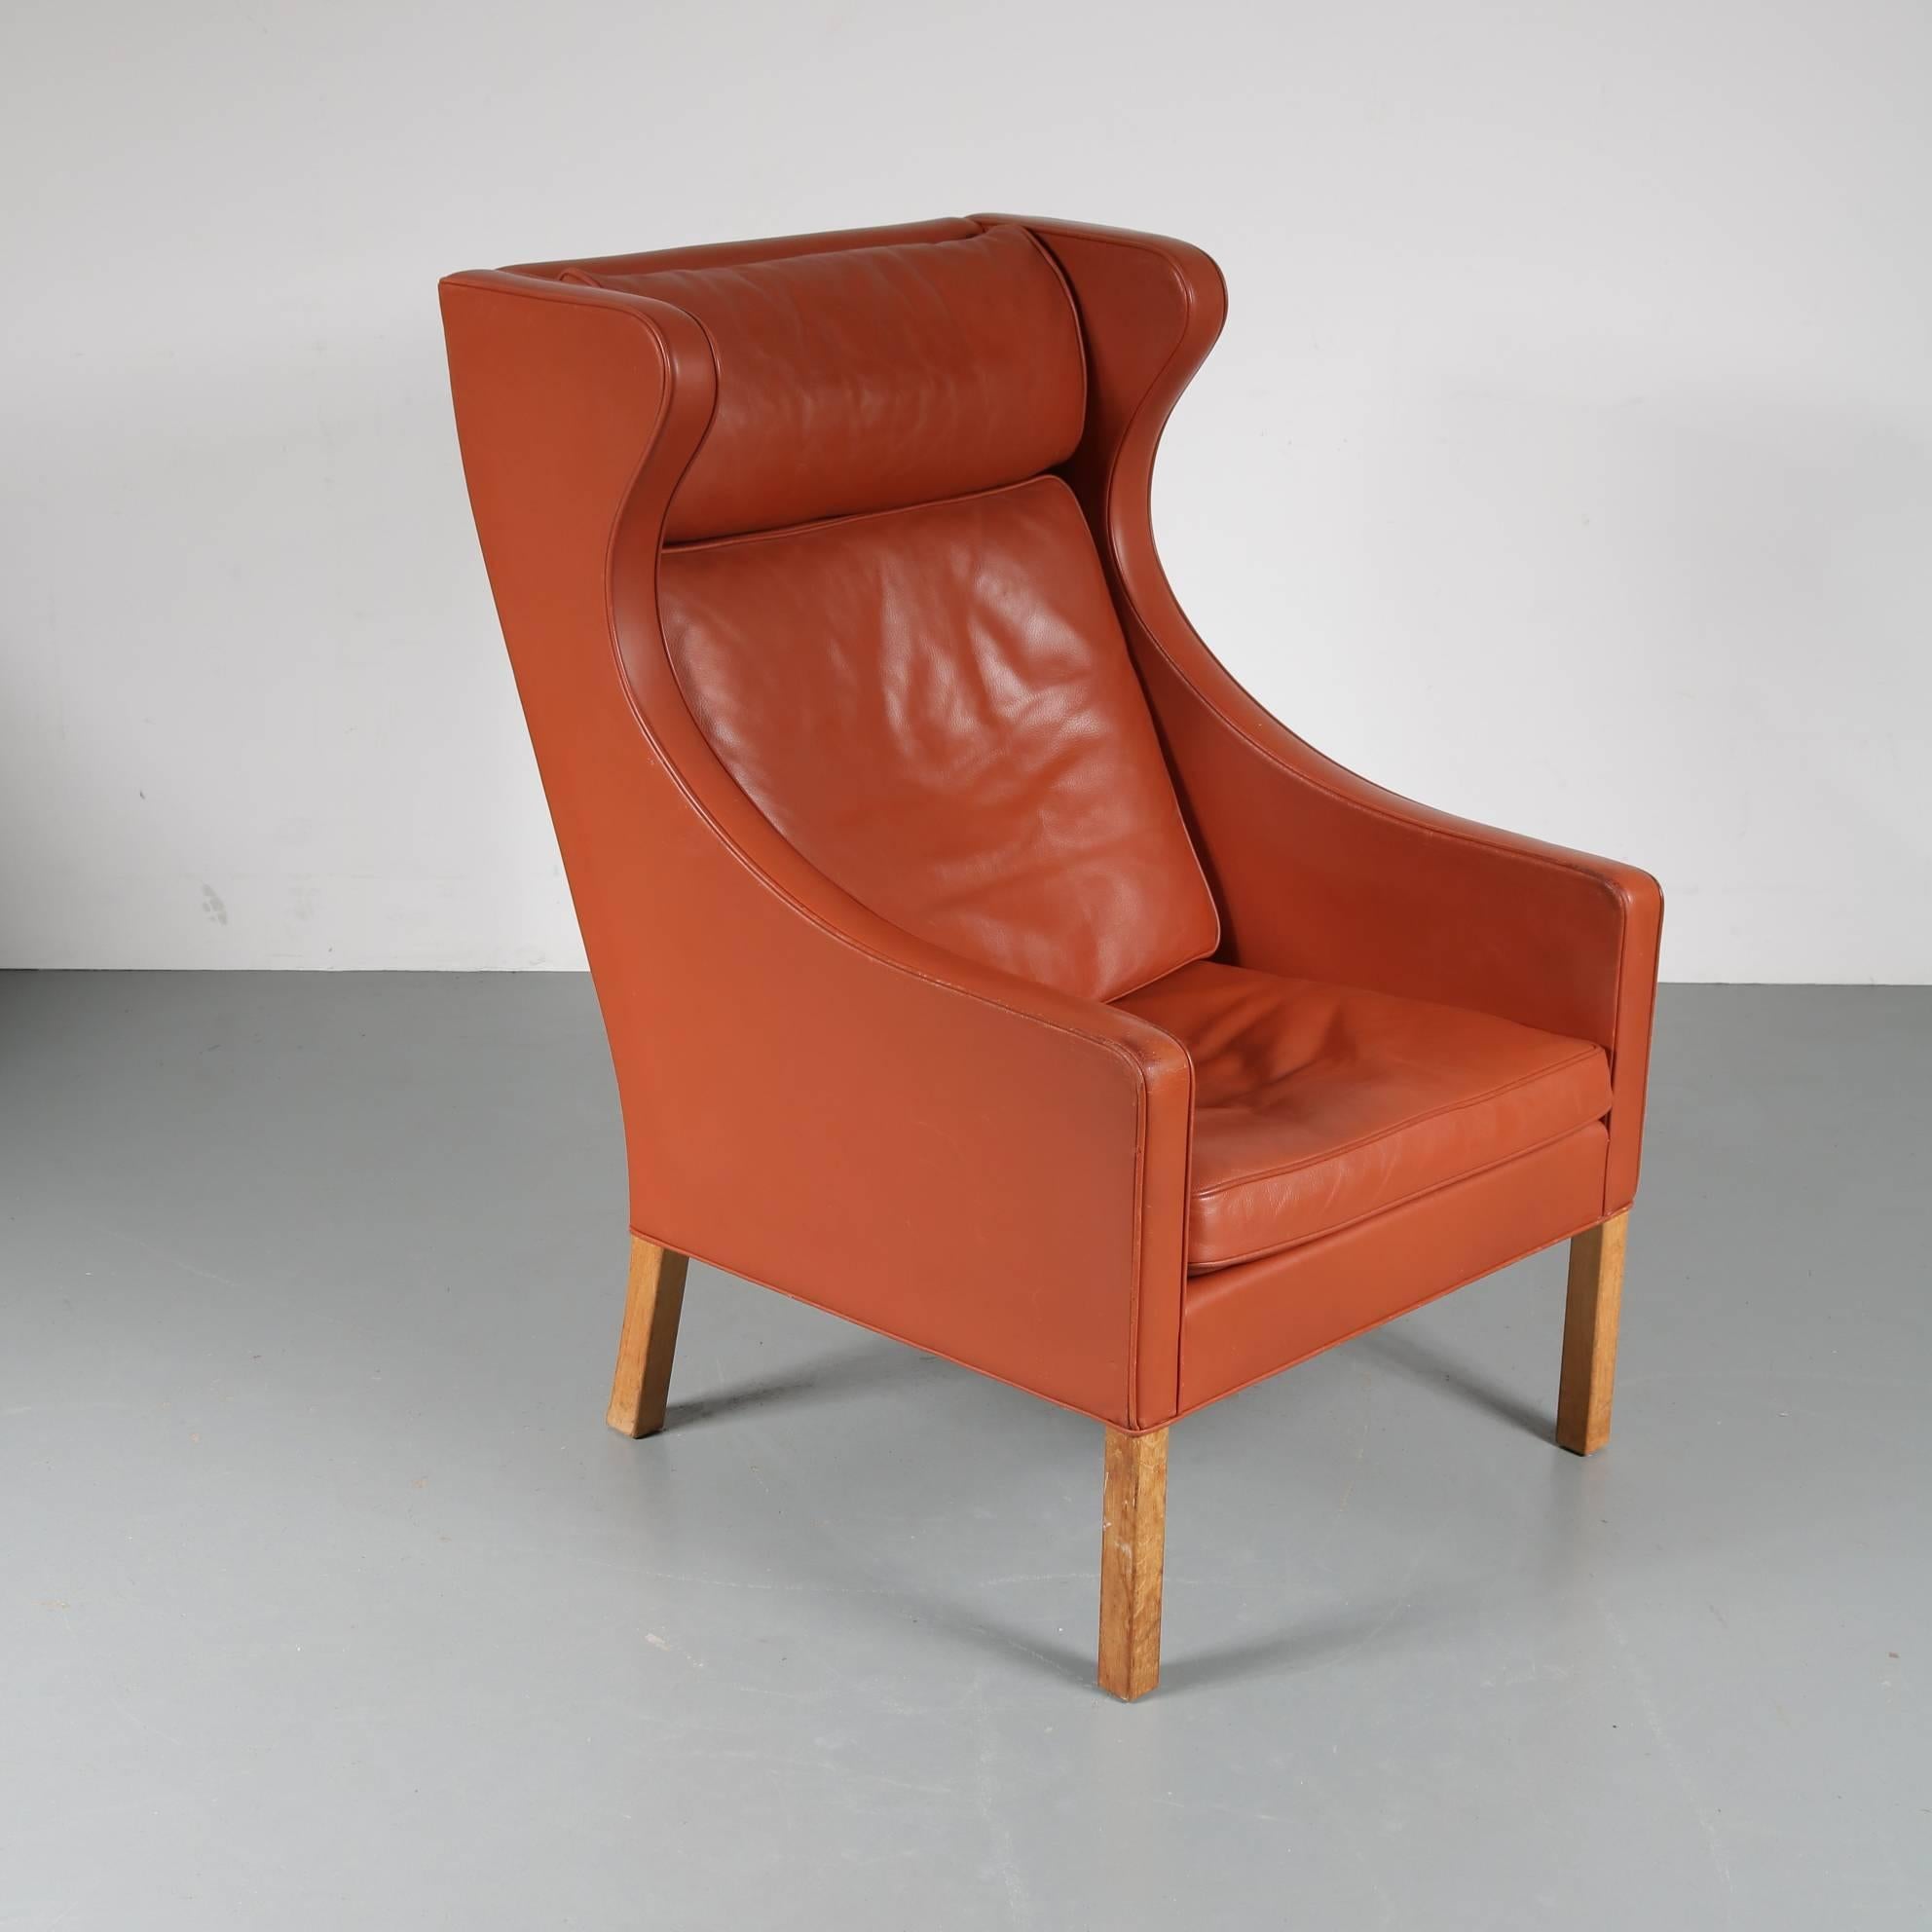 Fauteuil à haut dossier conçu par Børge Mogensen, fabriqué par Fredericia au Danemark, vers 1960.

Ce magnifique siège présente un contour bien défini et un intérieur doux et accueillant. Cela en a fait l'un de ses designs les plus emblématiques.